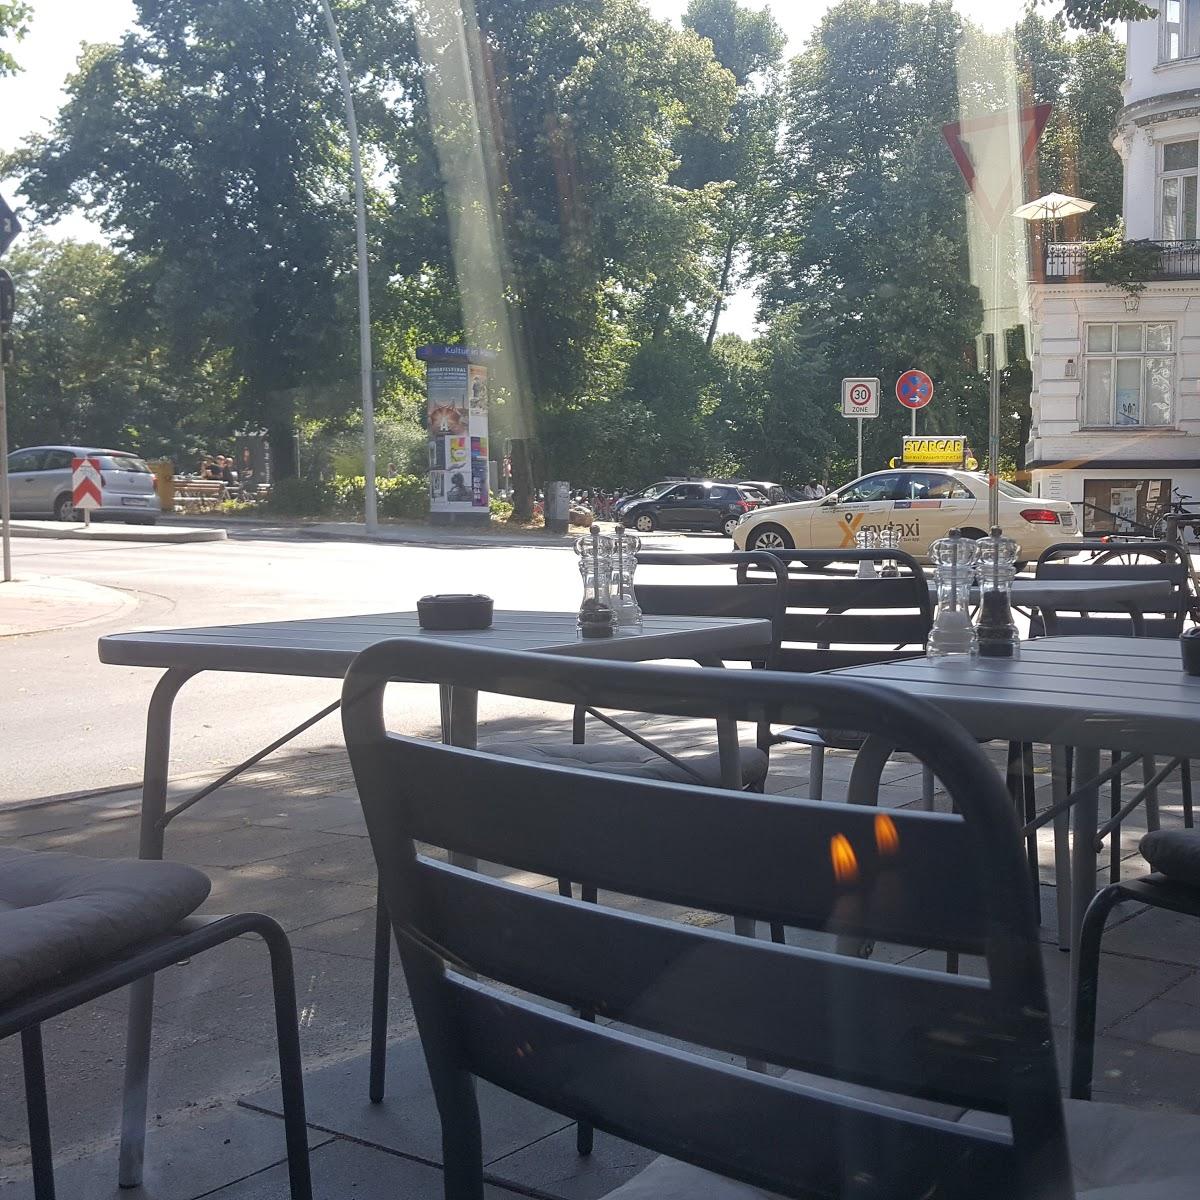 Restaurant "Vezos - Greek In The City" in Hamburg